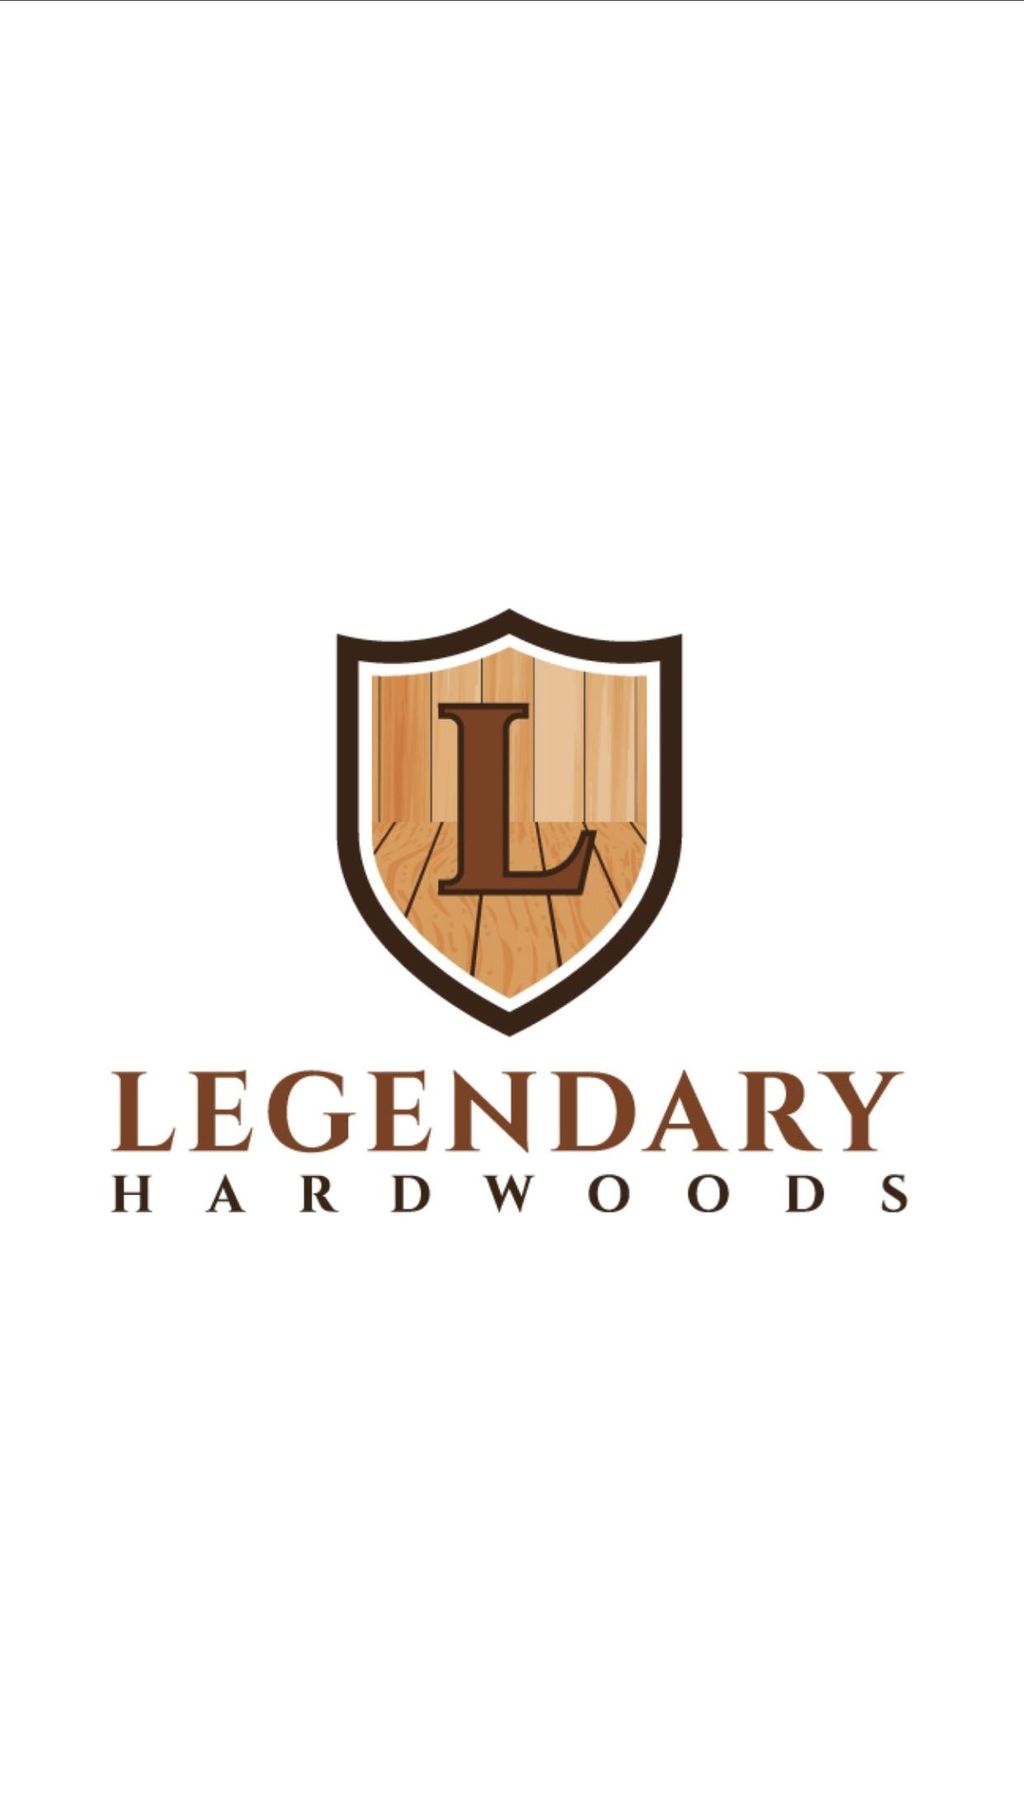 Legendary Hardwoods